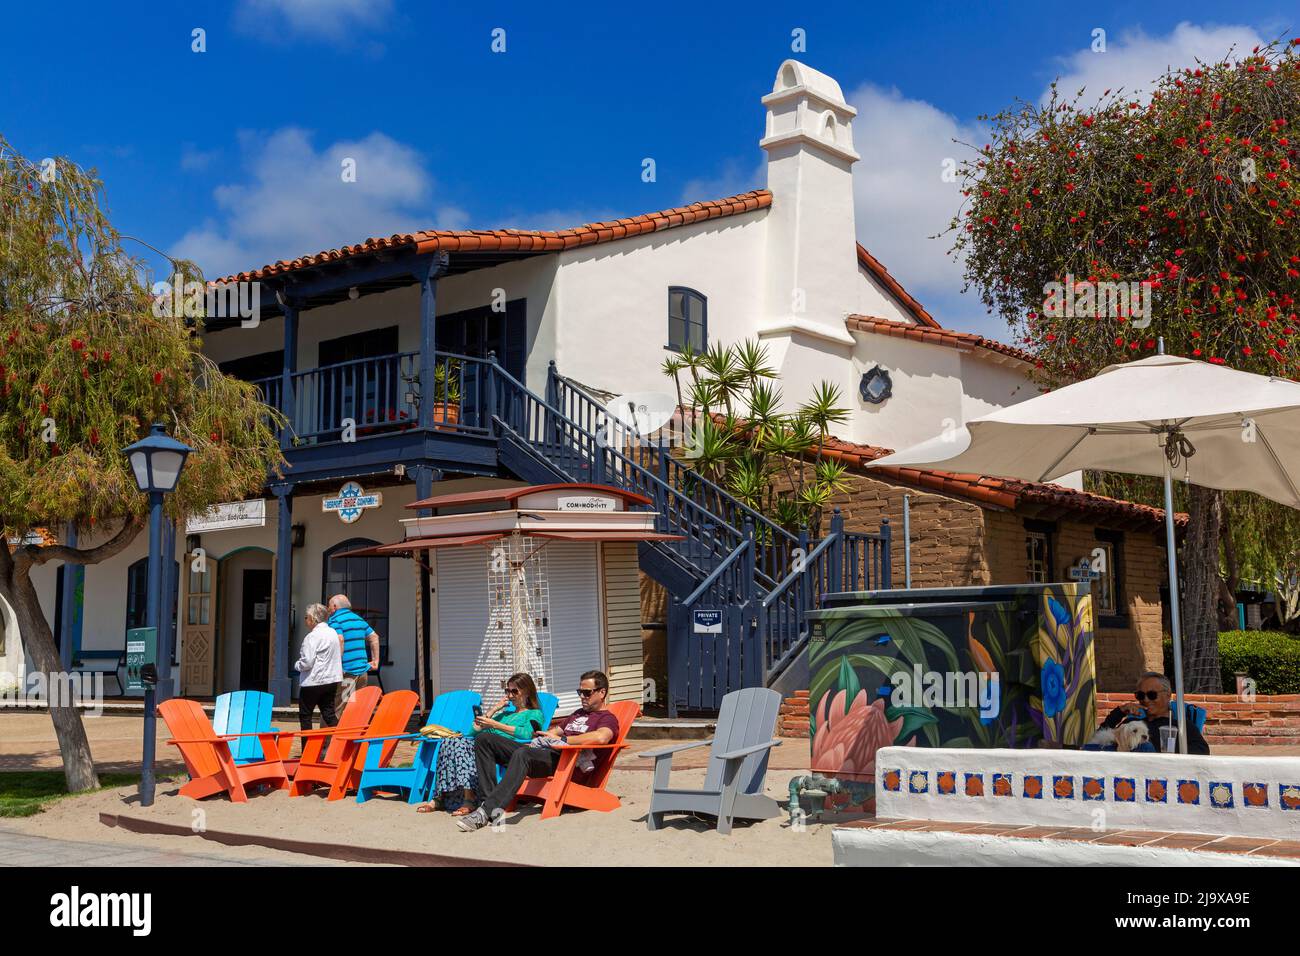 Seaport Village, San Diego, California, Estados Unidos Foto de stock